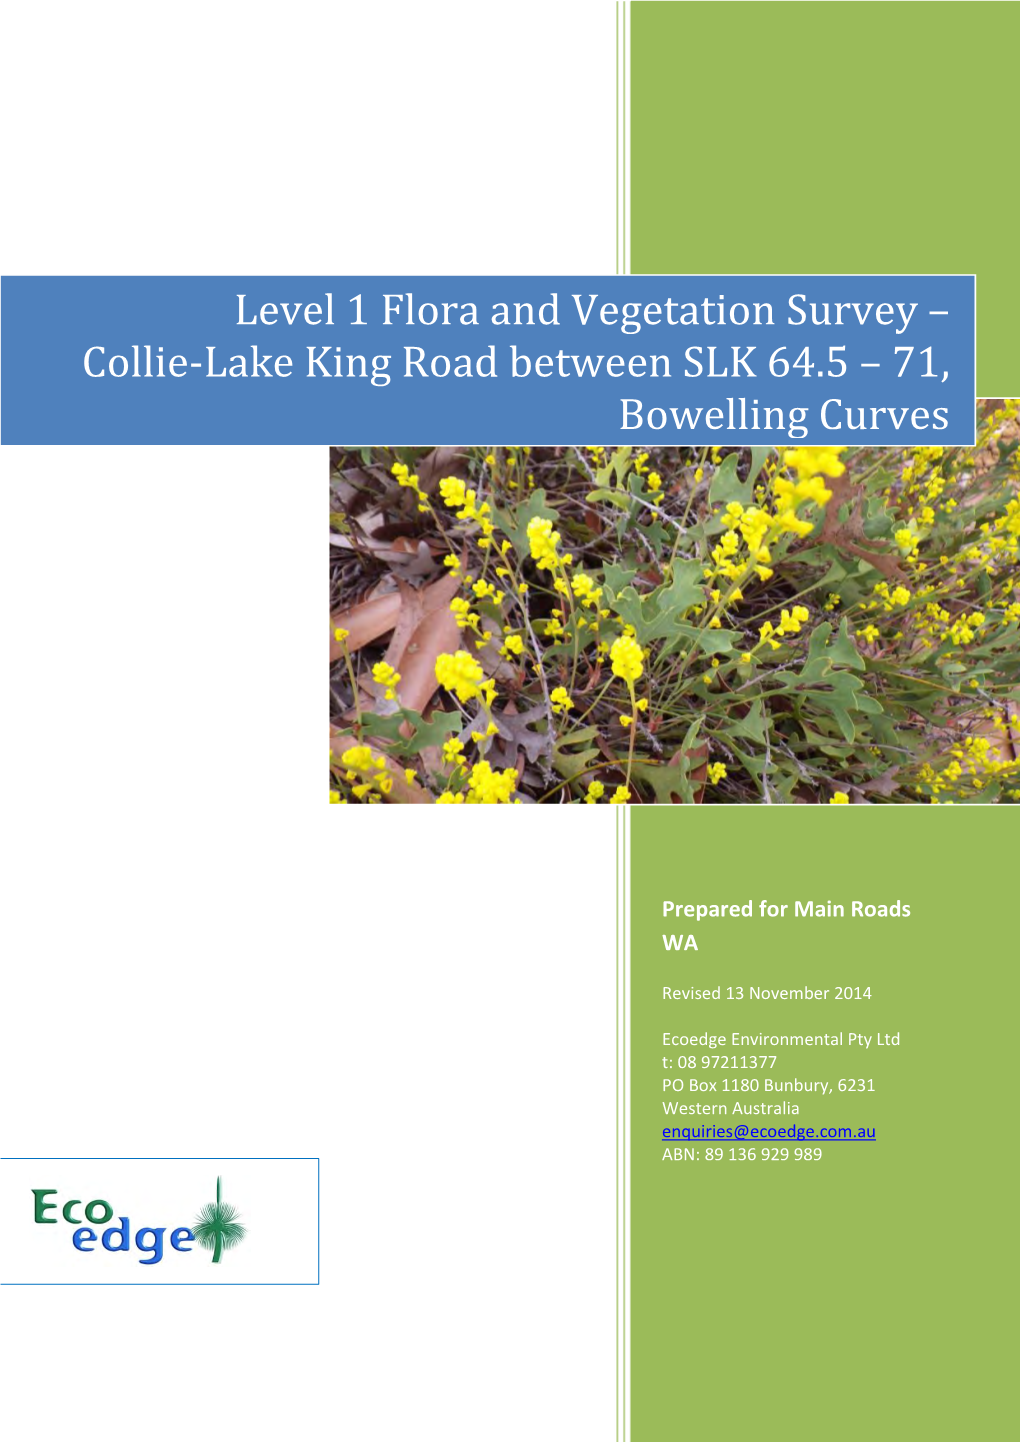 Level 1 Flora and Vegetation Survey – Collie-Lake King Road Between SLK 64.5 – 71, Bowelling Curves